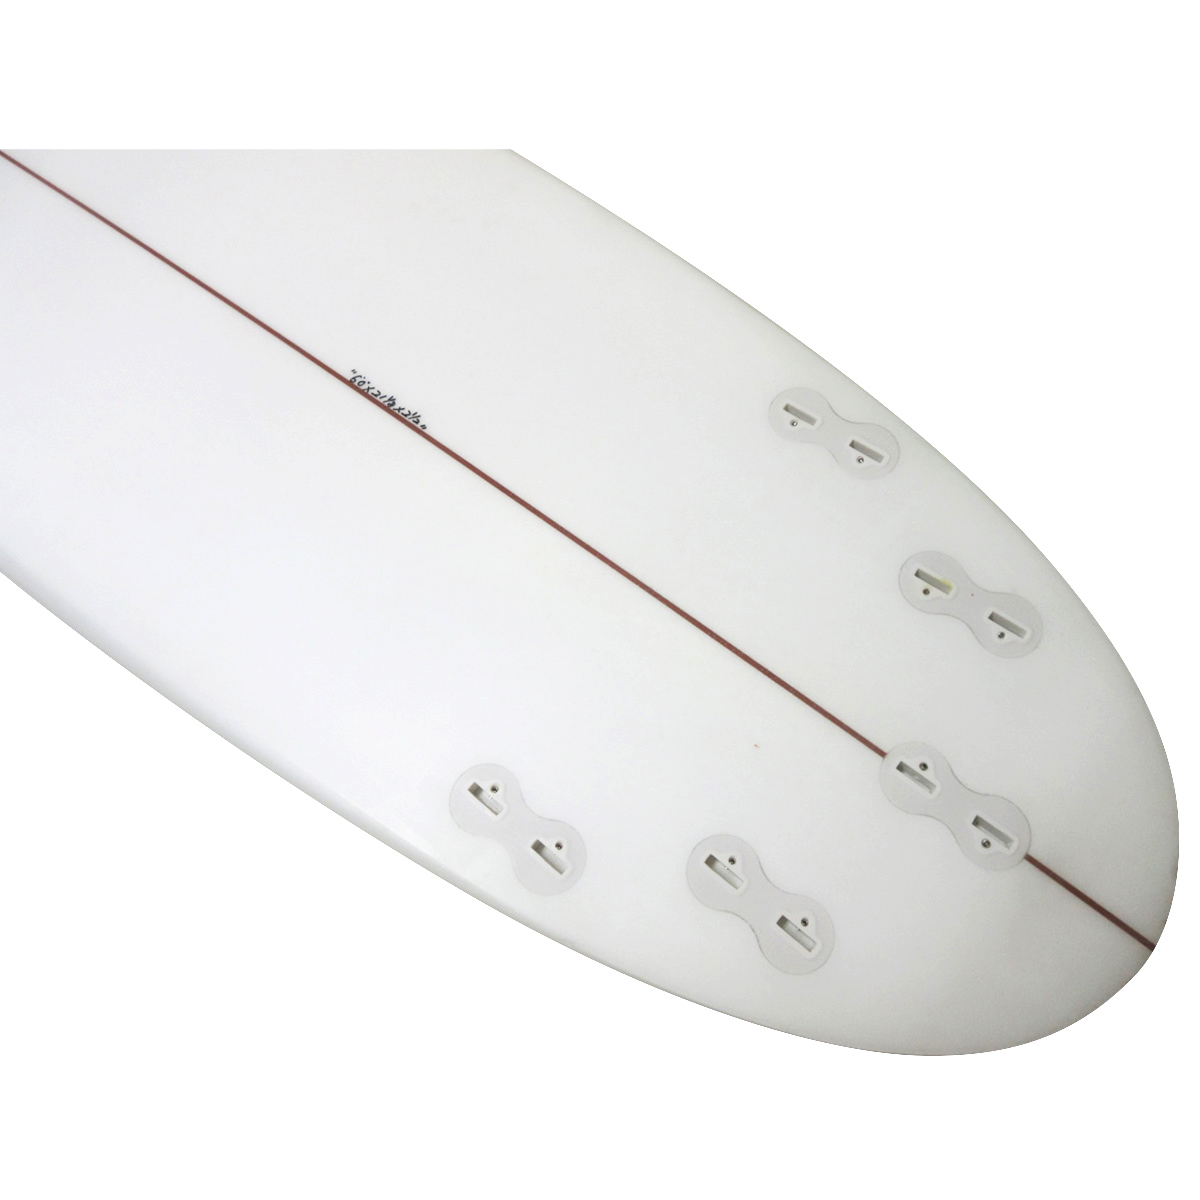 I-Enzer Surfboards / T3C Model 6`0